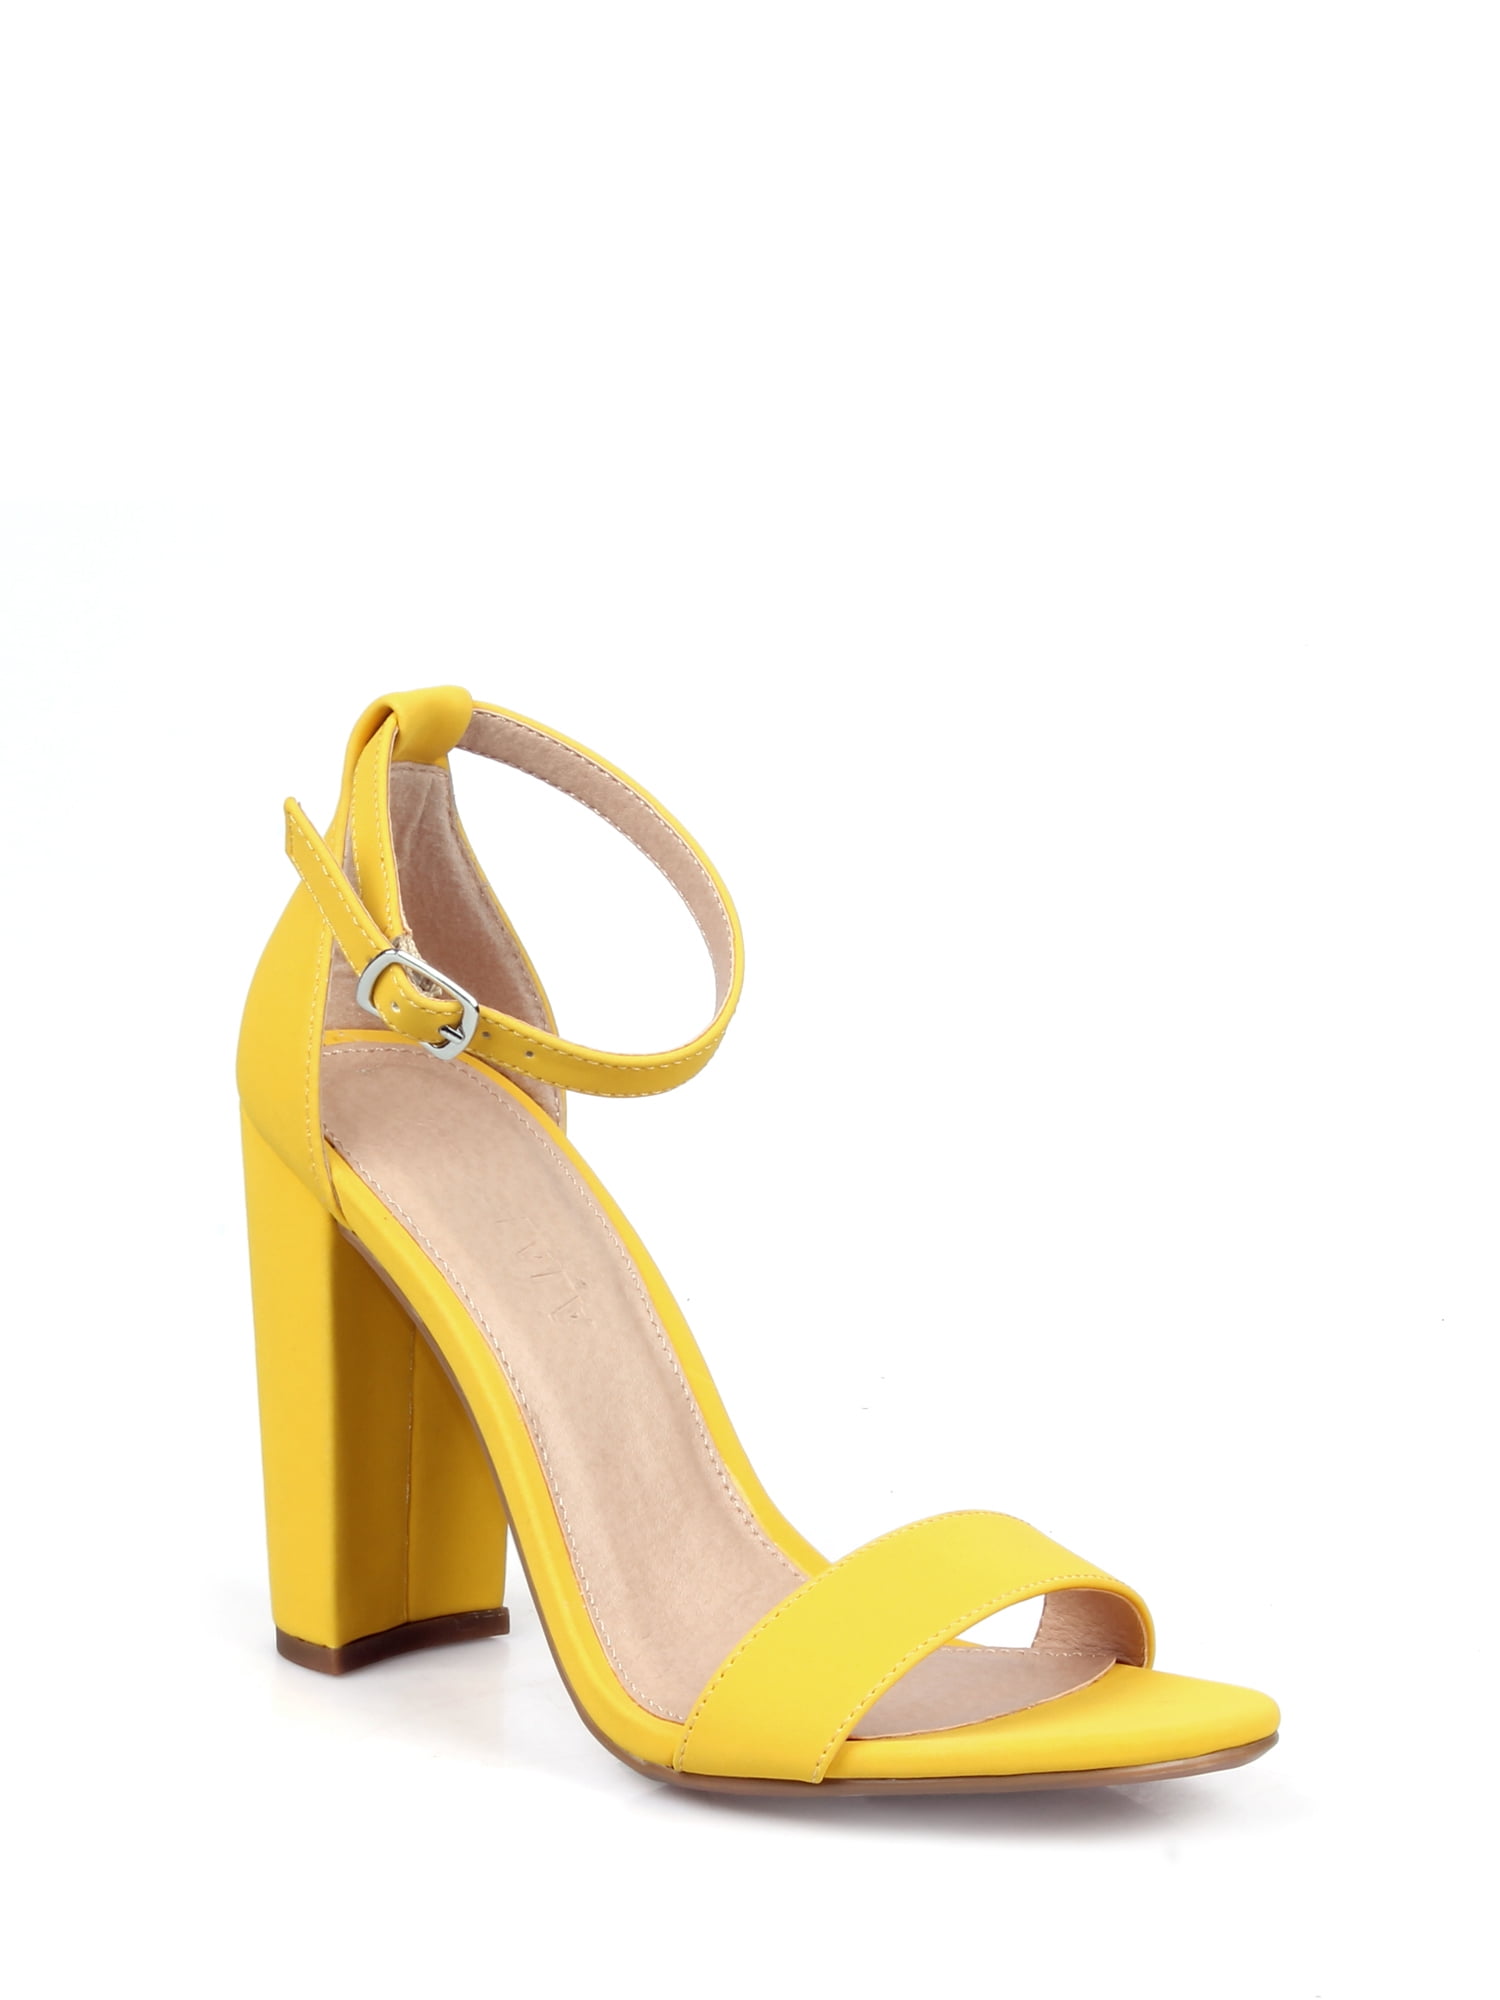 Shoelala - ShoeLaLa Two Piece Women's Chunky Heel Sandals in Yellow ...